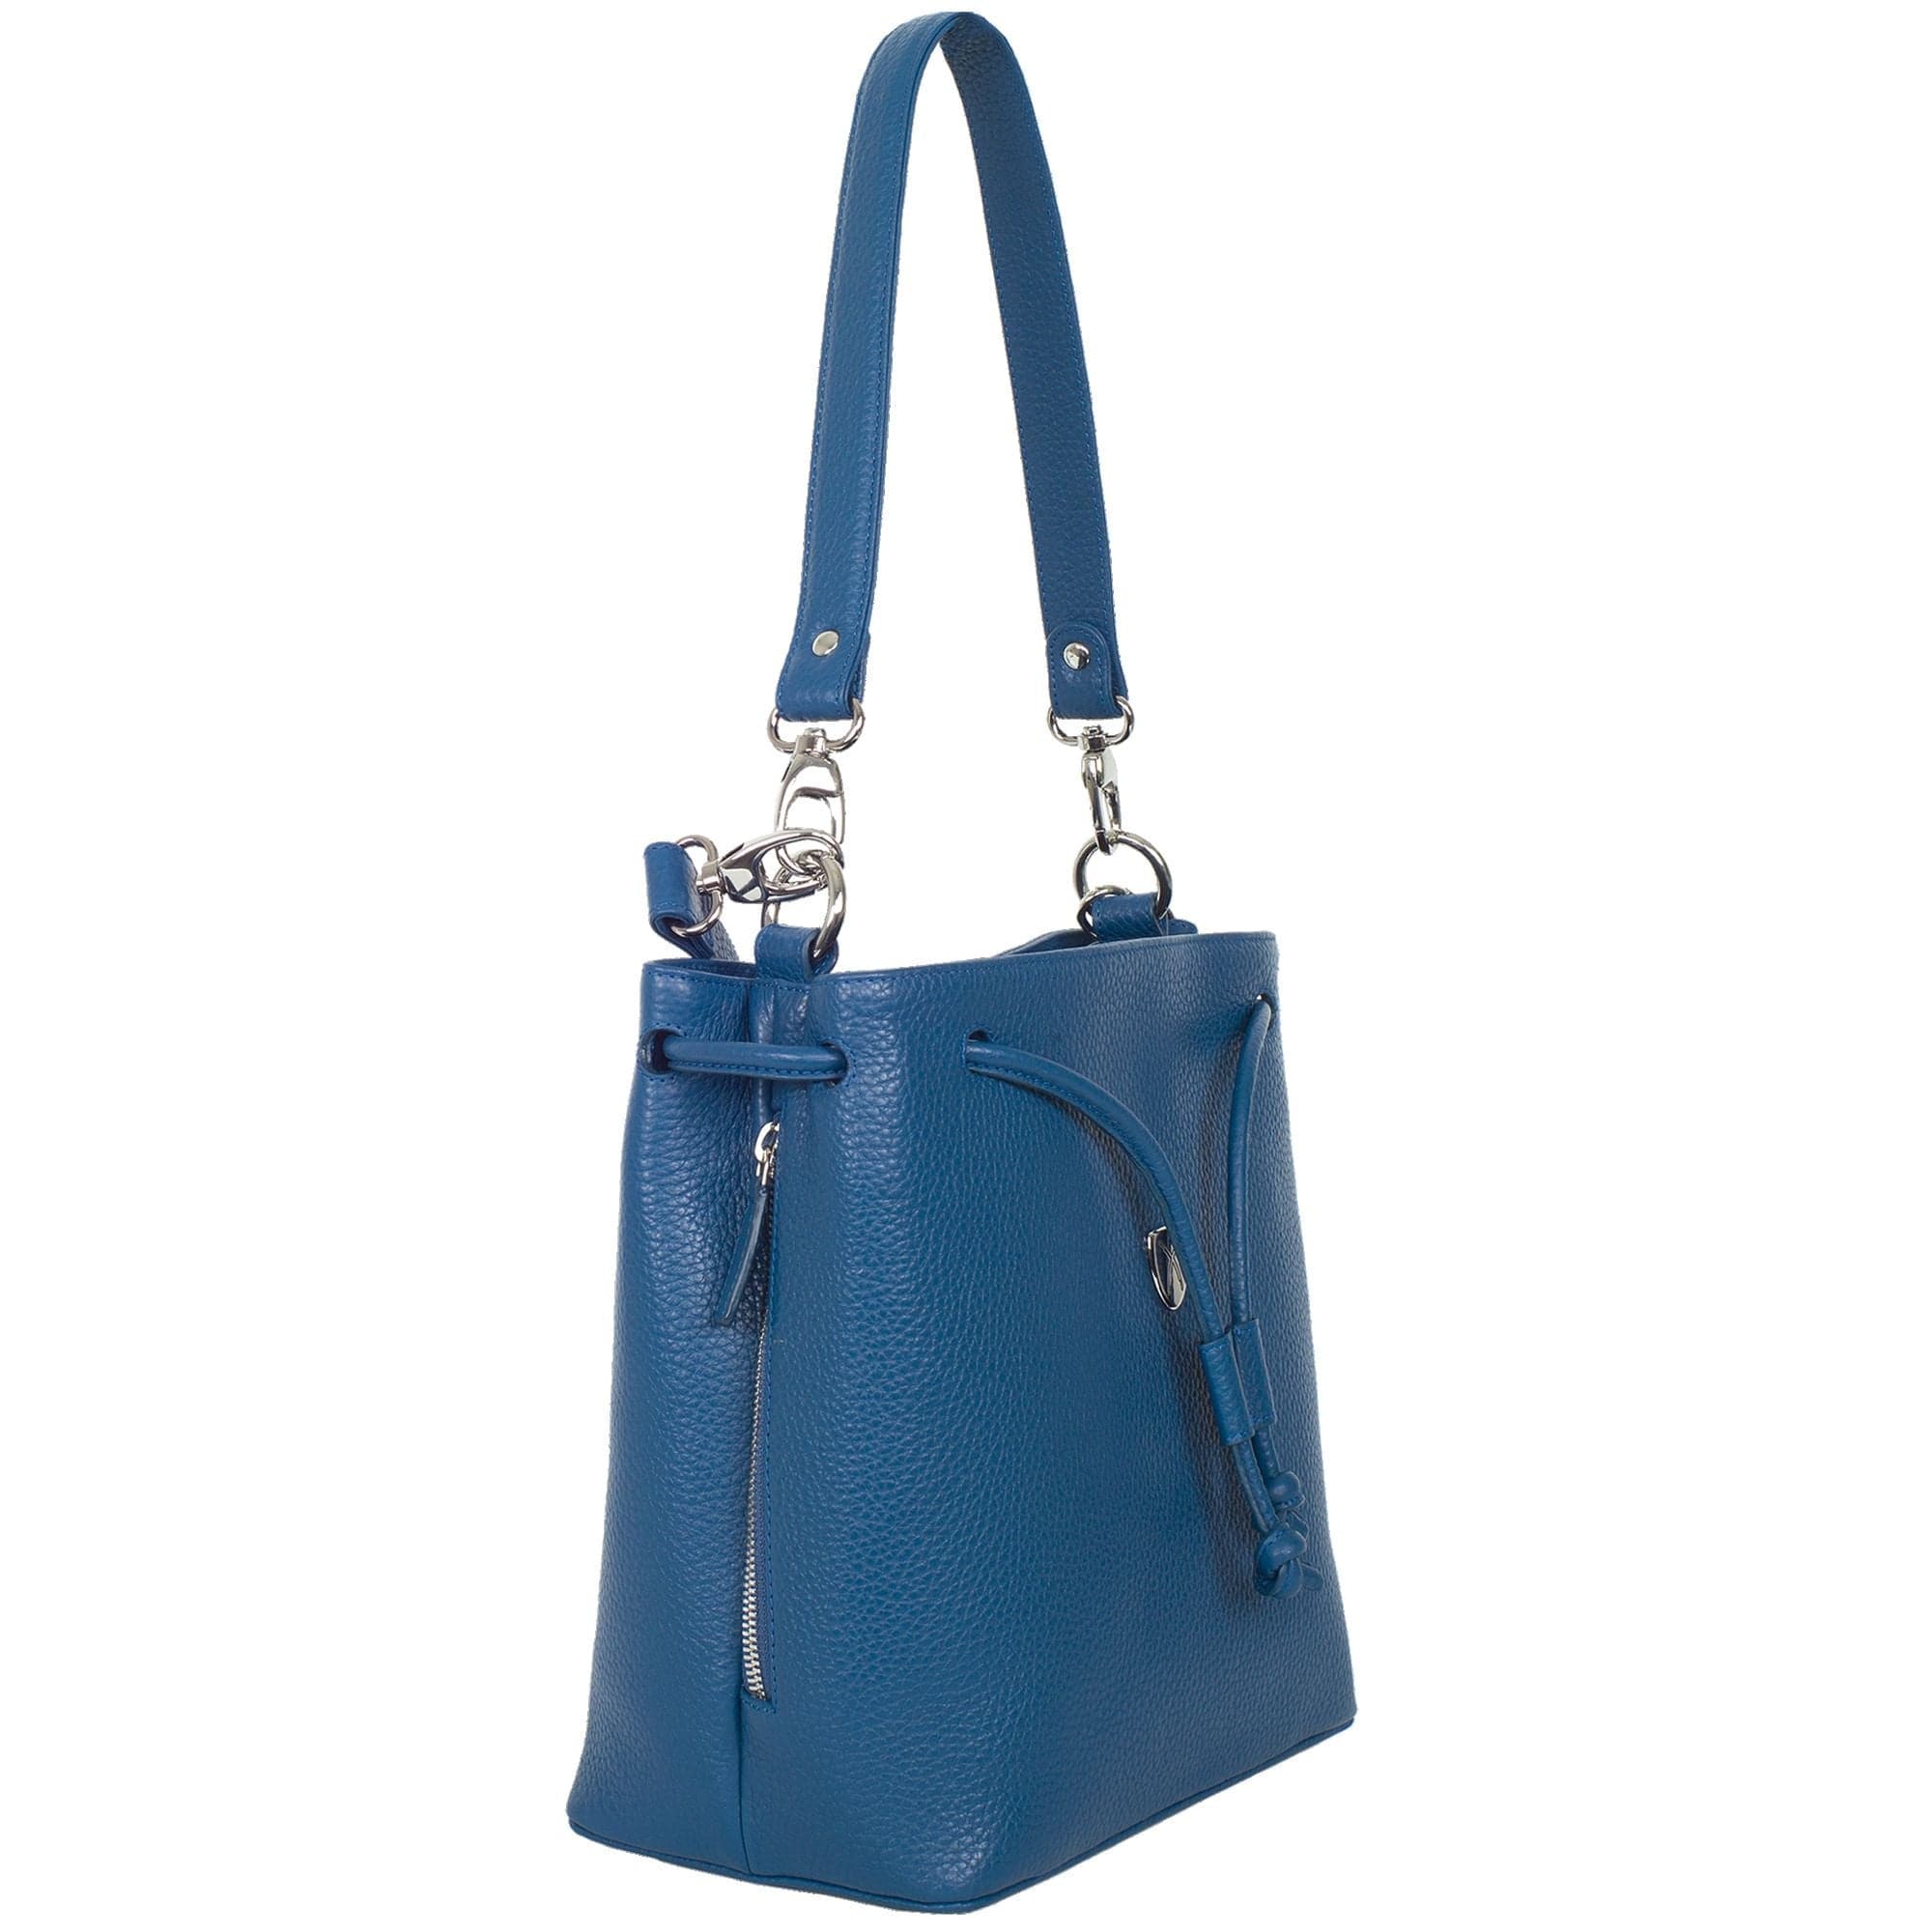 Handtasche Umhängetasche 10 Zoll Leder blau